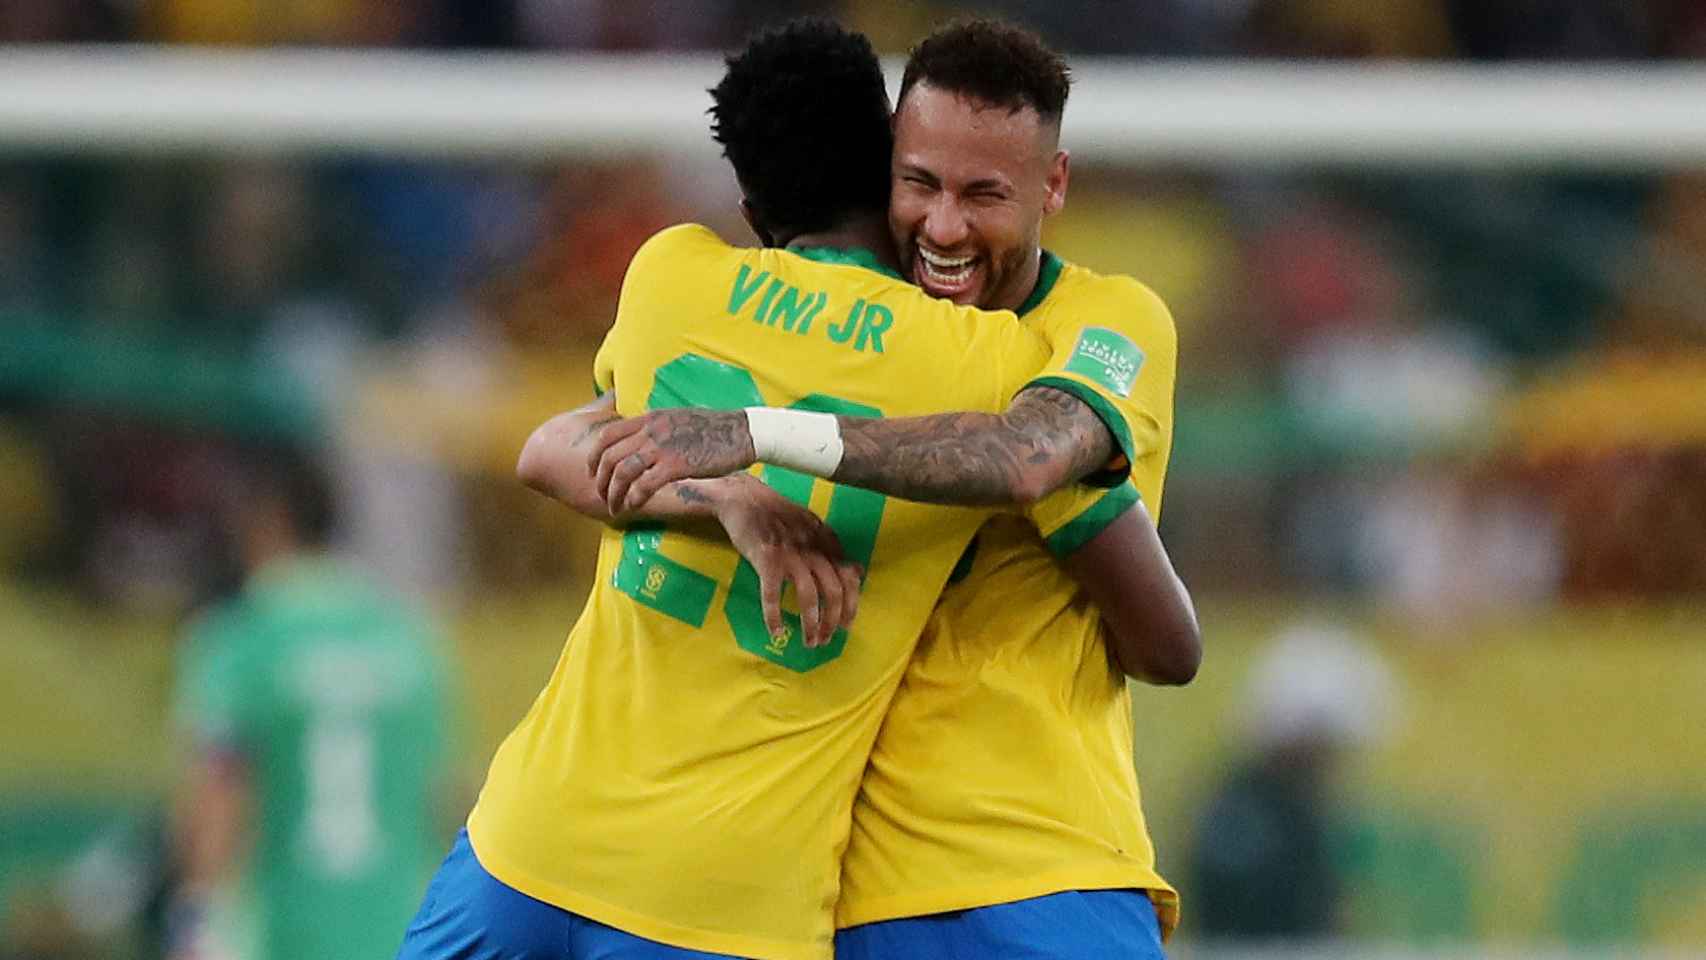 Abrazo entre Vinicius y Neymar, en un partido de la selección de Brasil